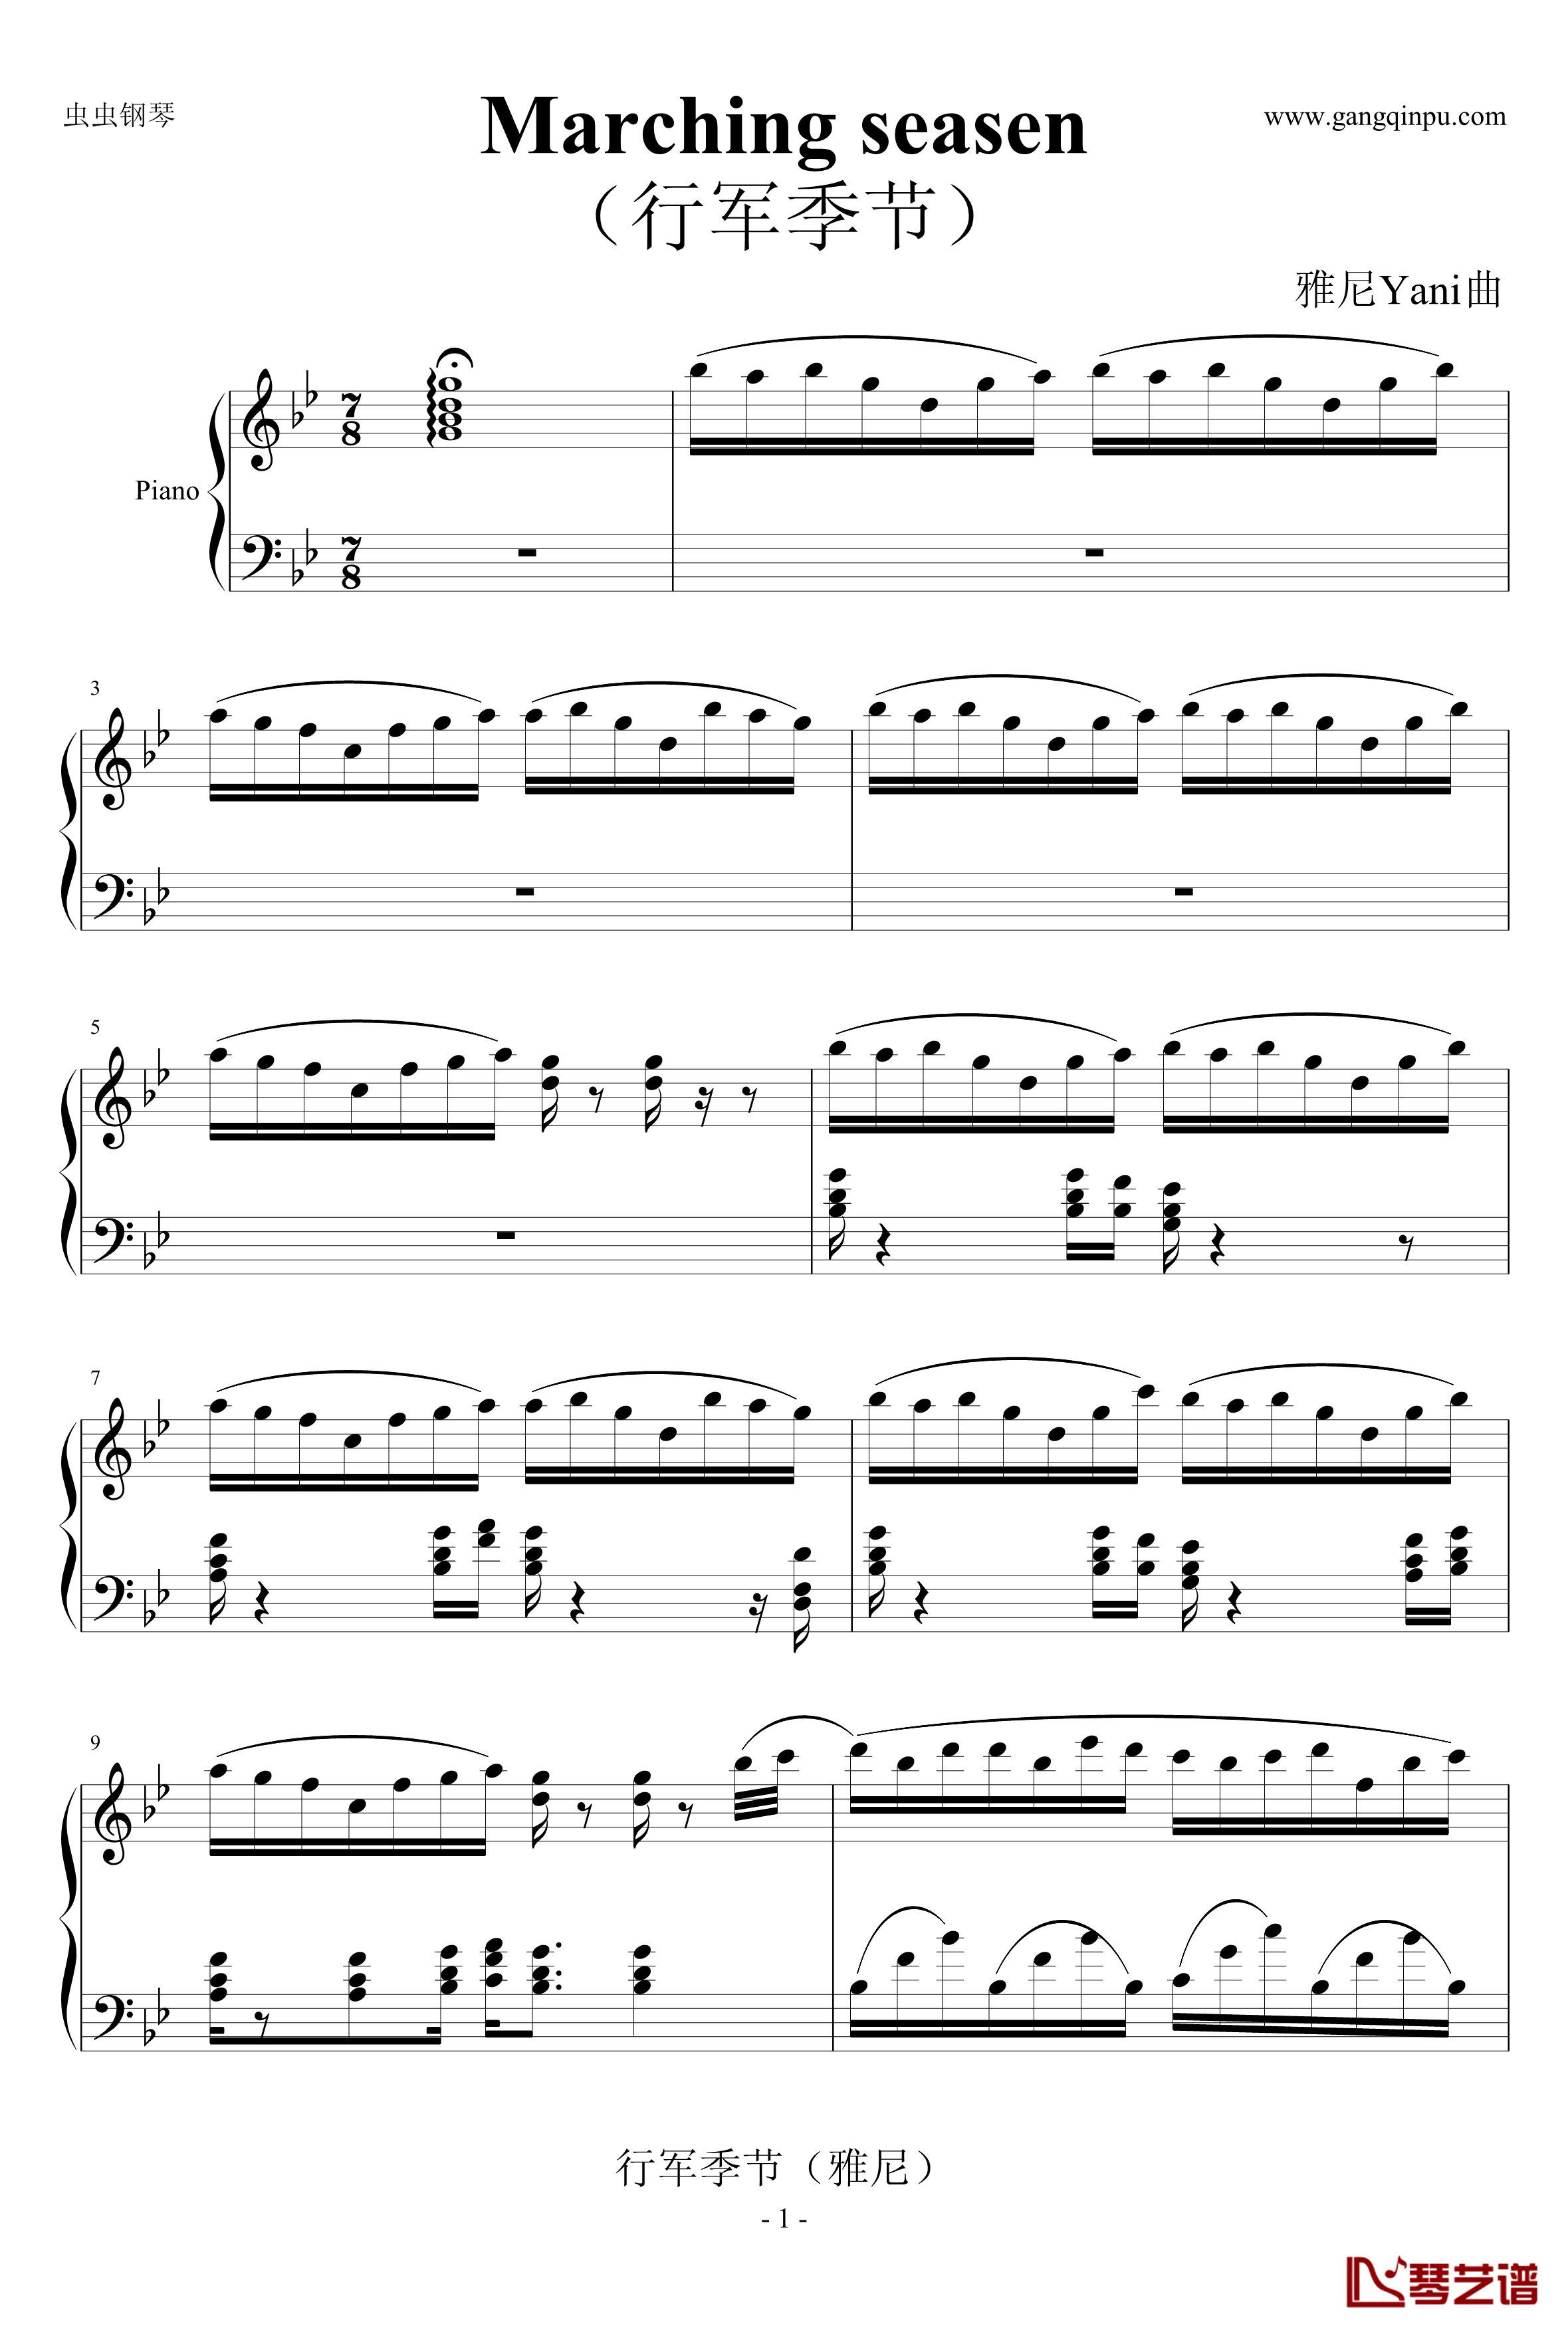 行军季节钢琴谱-雅尼1